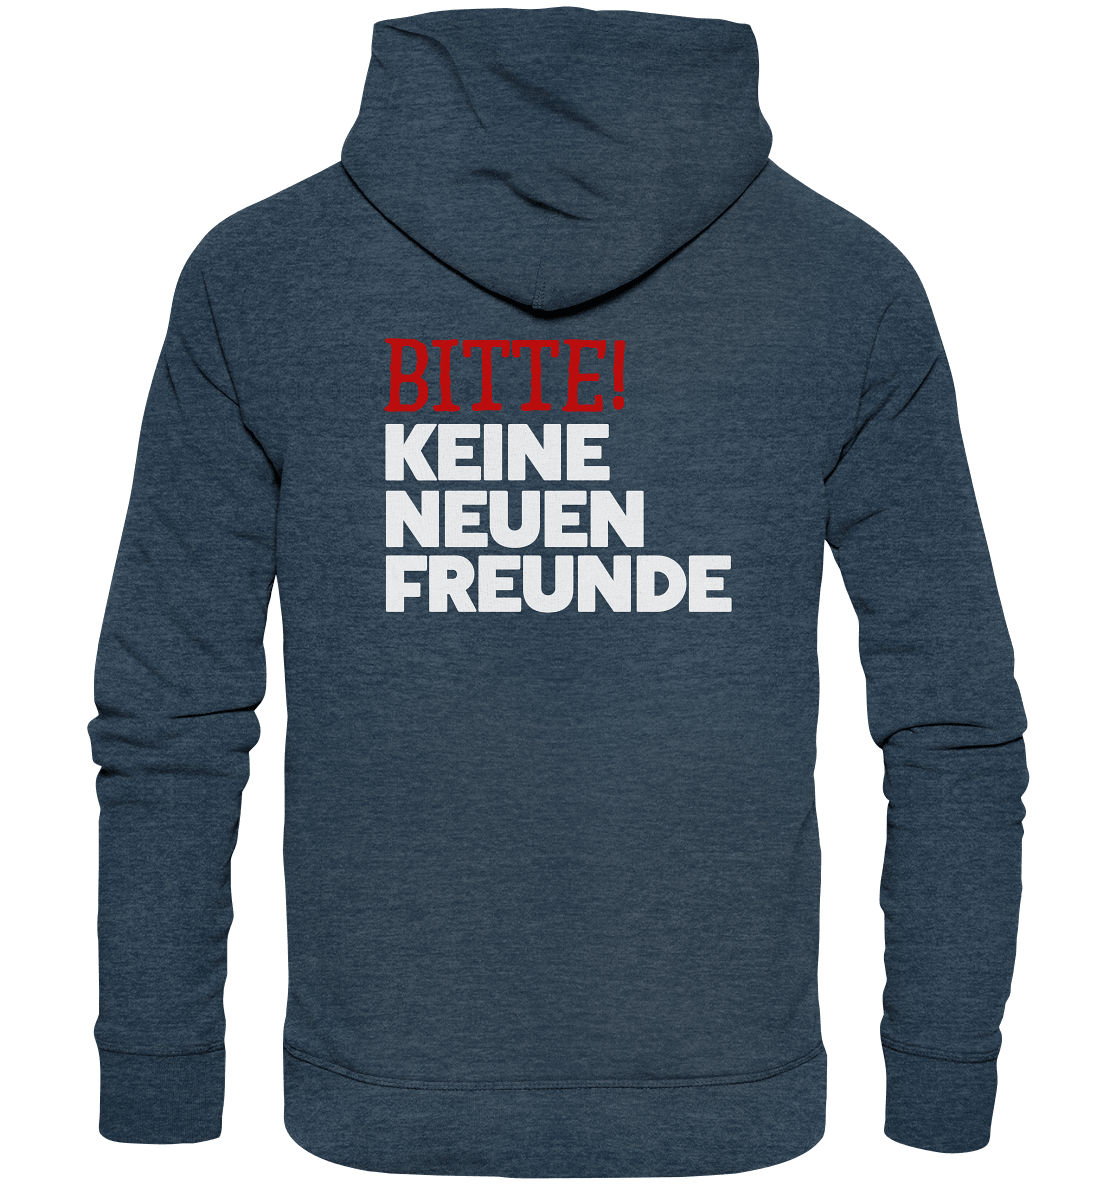 KNF "KEINE NEUEN FREUNDE" - Organic Fashion Hoodie - Snapshirts